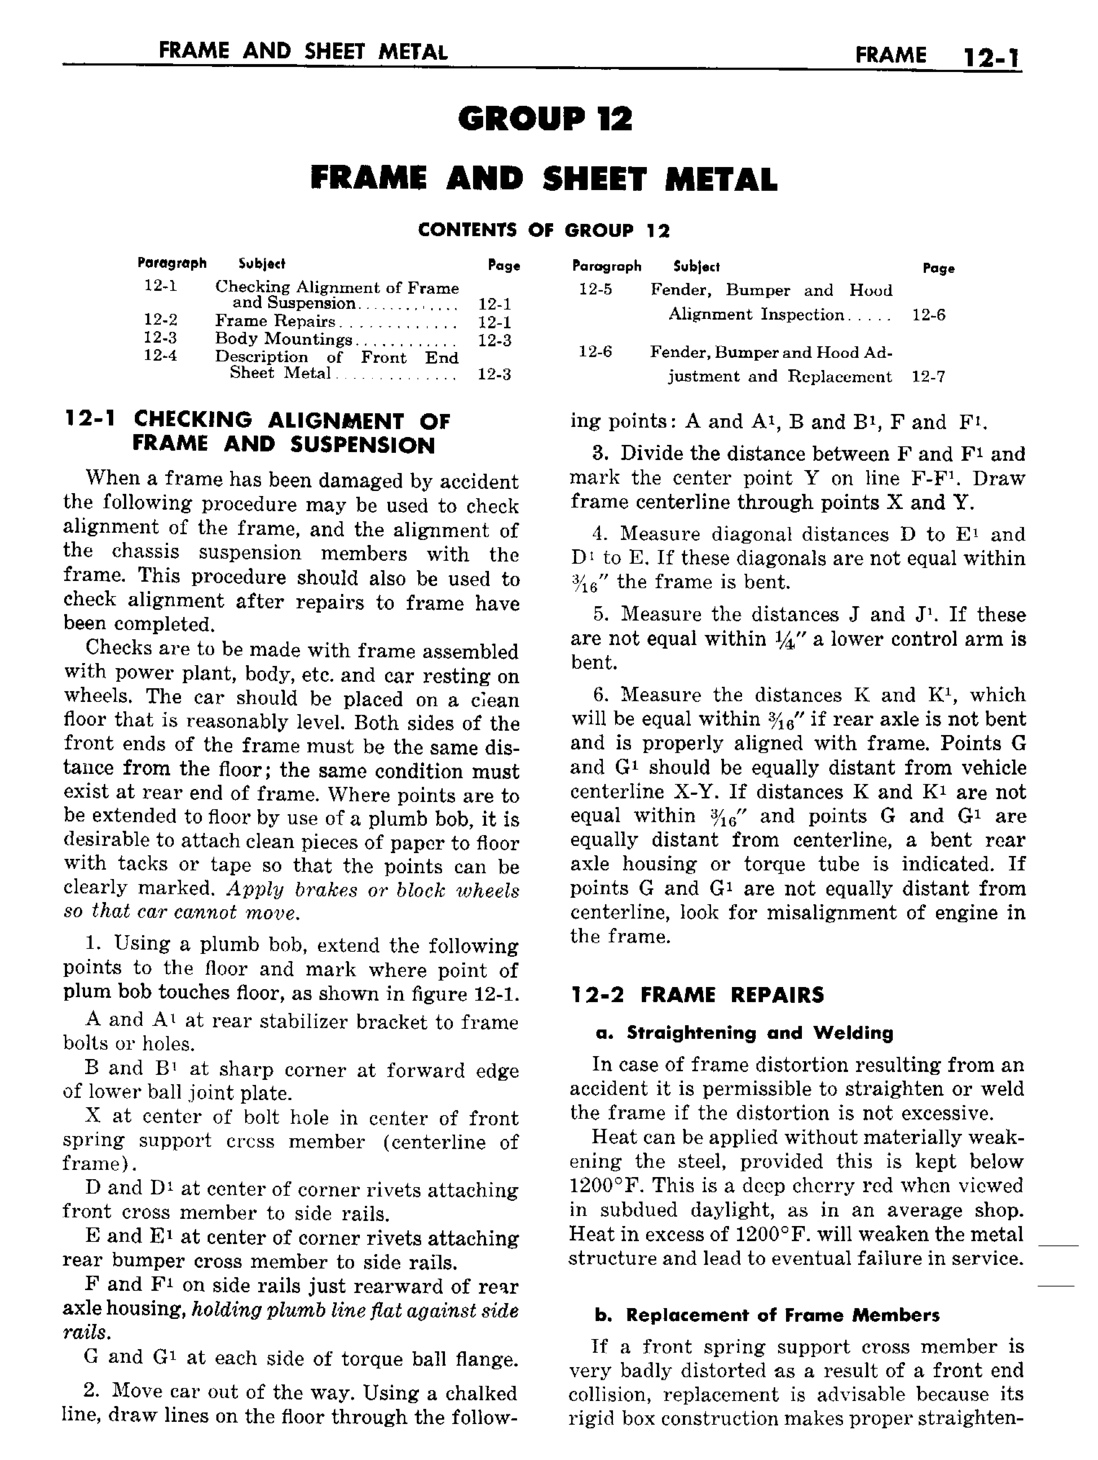 n_13 1960 Buick Shop Manual - Frame & Sheet Metal-001-001.jpg